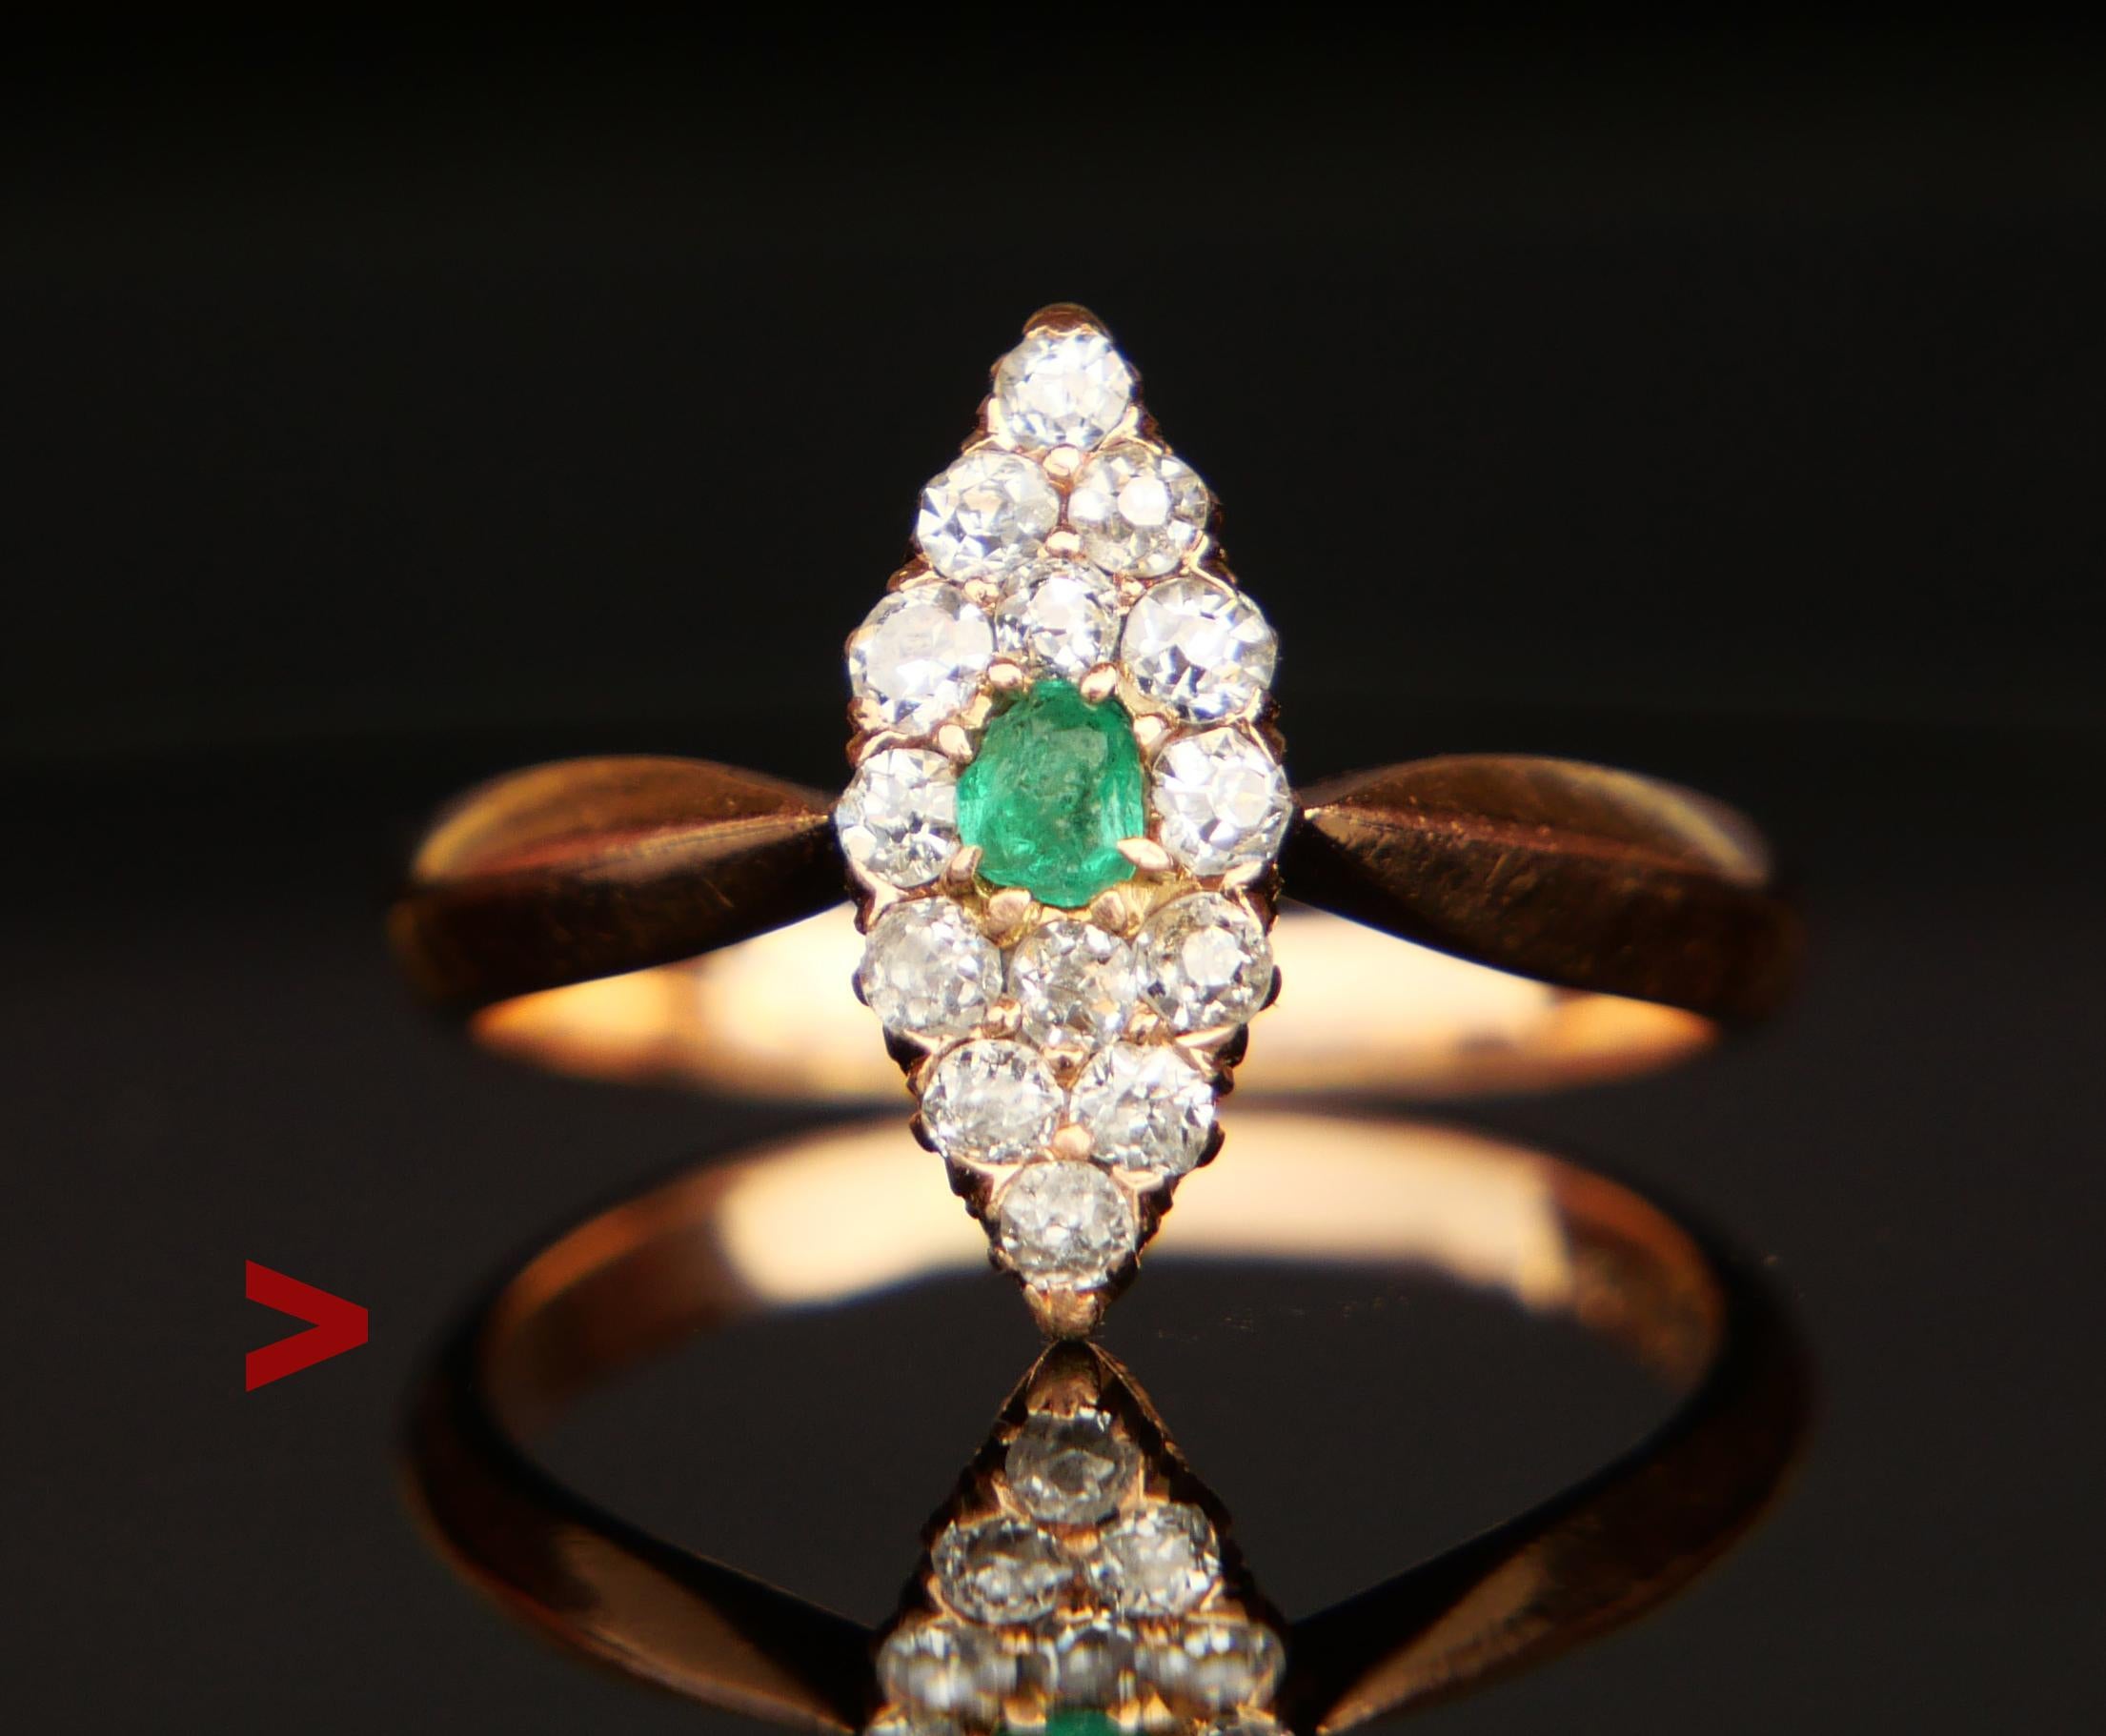 Deutscher Ring aus der Zeit des Art déco mit Smaragd und Diamanten.

Die augenförmige Krone ist 14 mm x 6 mm x 5 mm tief. Der Smaragd ist oval geschliffen 3 mm x 2,5 mm x 1,5 mm tief / ca. 0,15ct . Es gibt 14 Diamanten im alten europäischen Schliff,